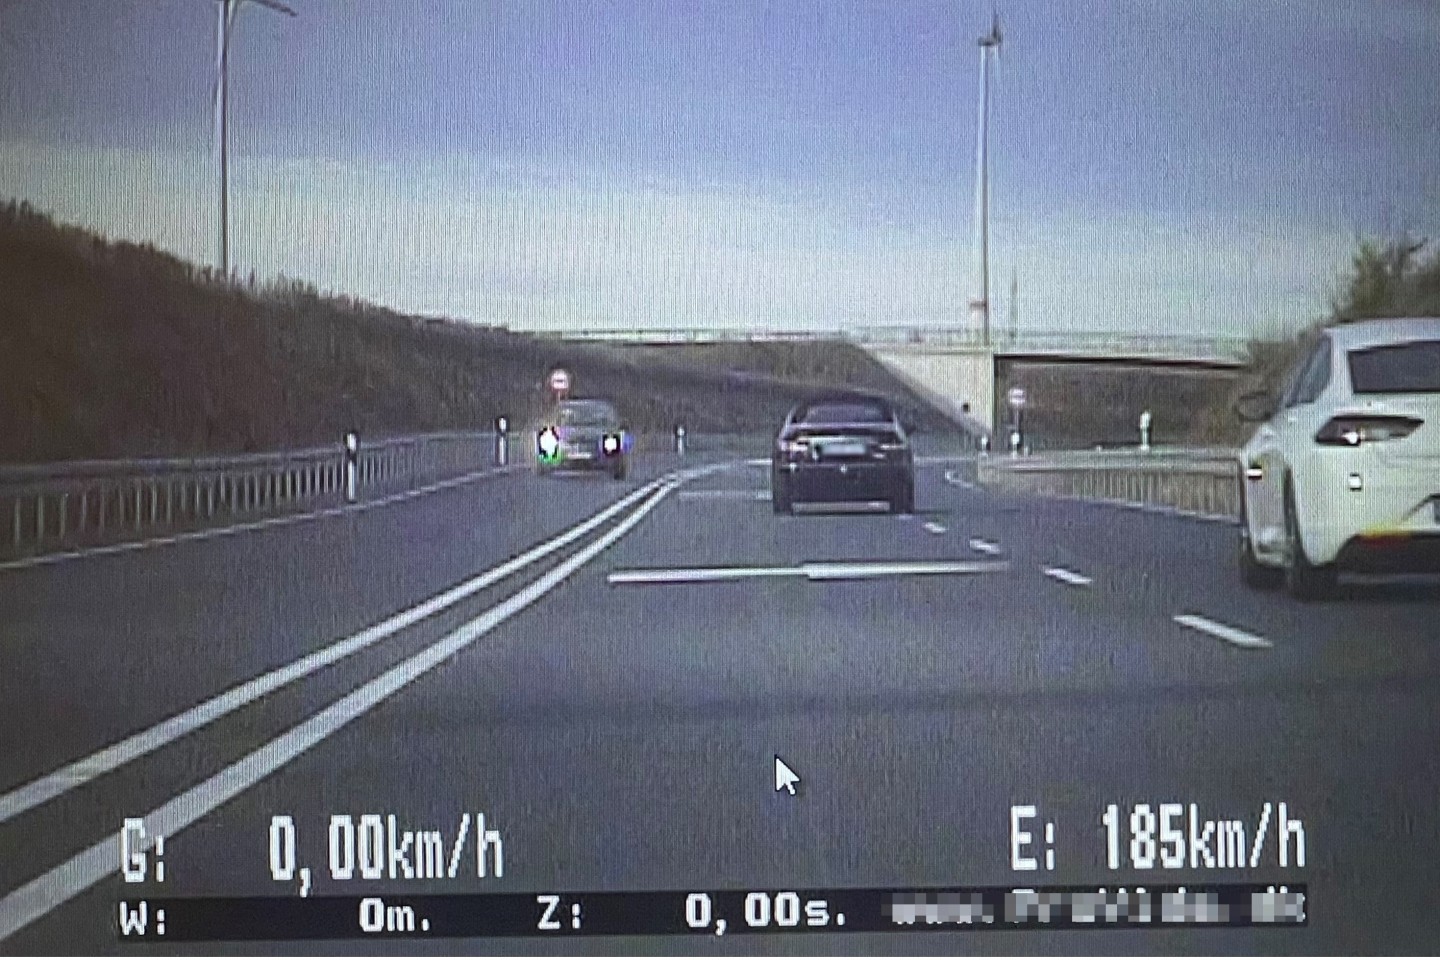 POL-PB: #PassAuf! Polizei mit Video-Motorrad im Einsatz Screenshot: Ein Raser auf der B480 im Polizeivideo Kreis Paderborn (ots)